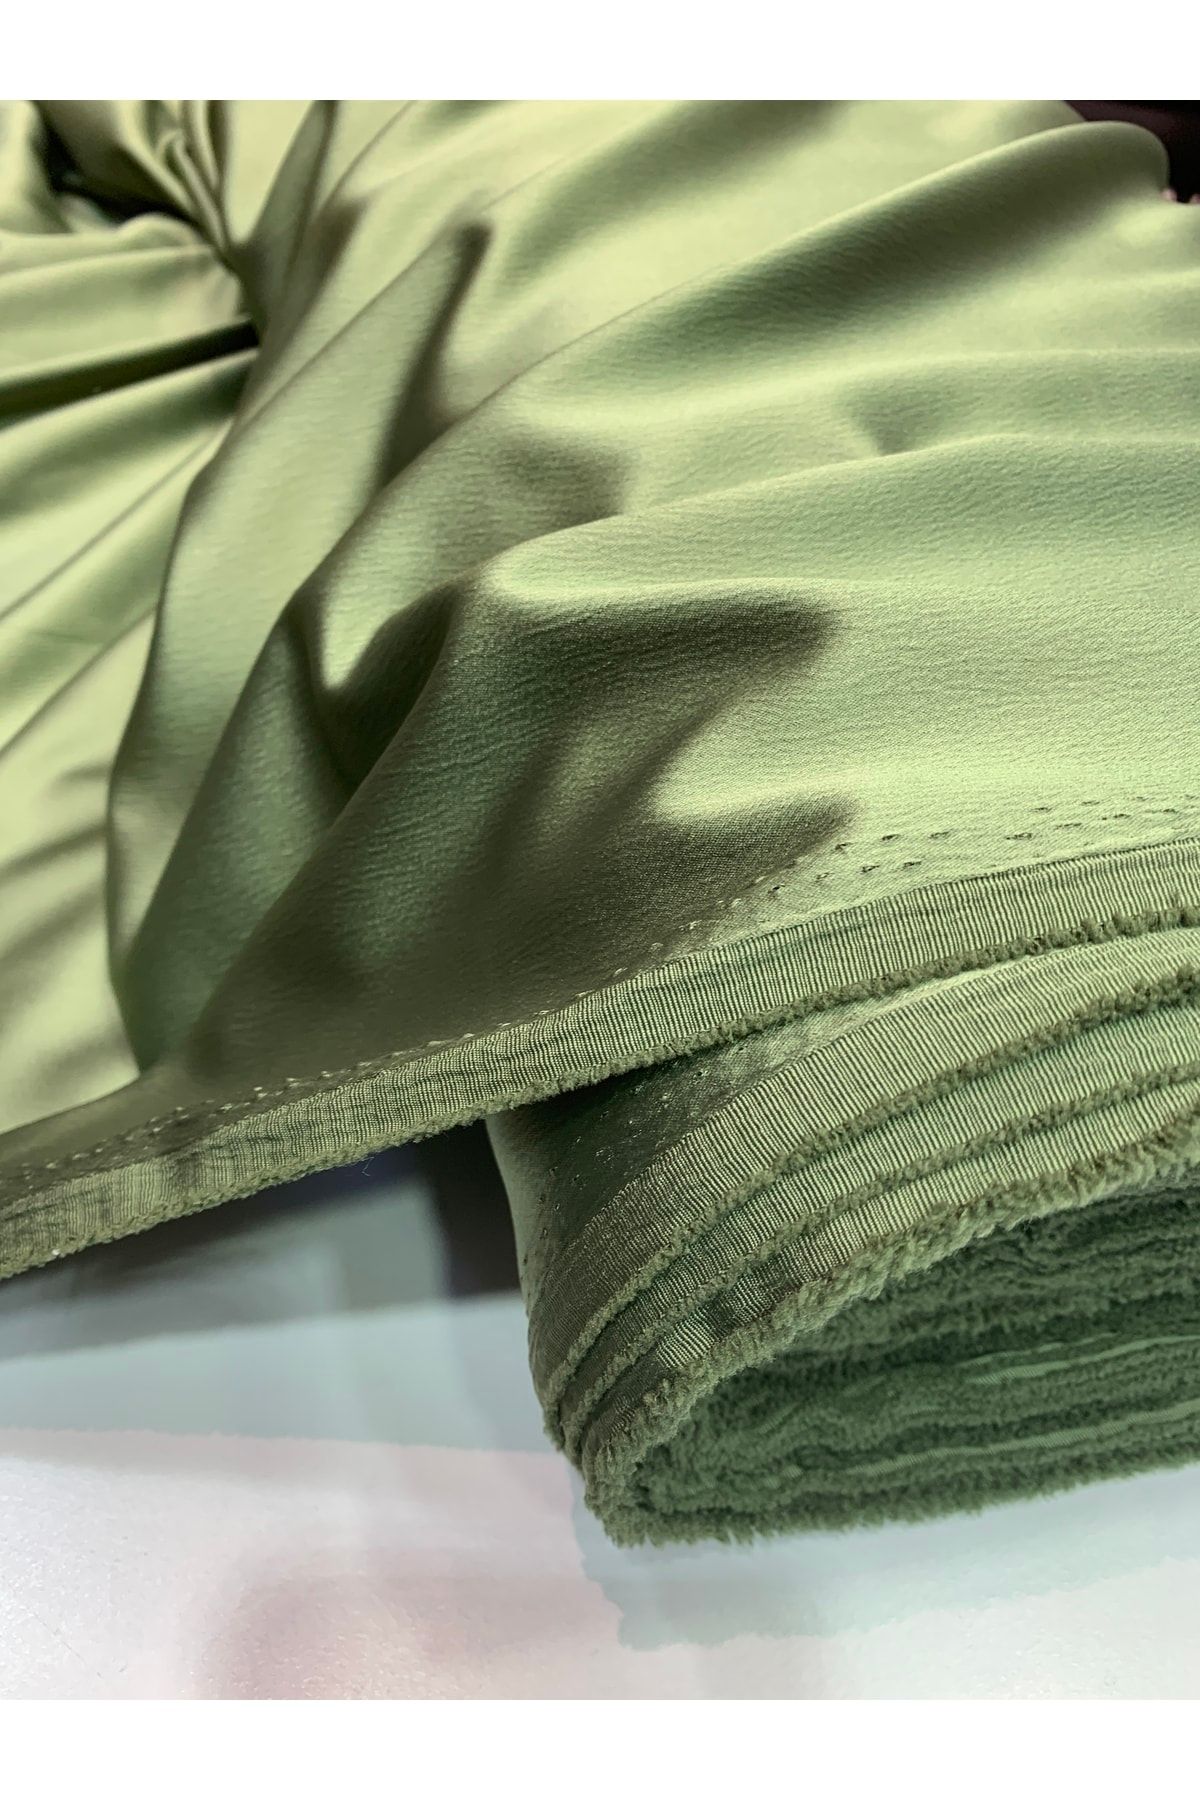 Nadirzade Kumaşçılık Dökümlü Yağ Yeşili Chanel Saten Likralı Kumaş (150 Cm Eninde)